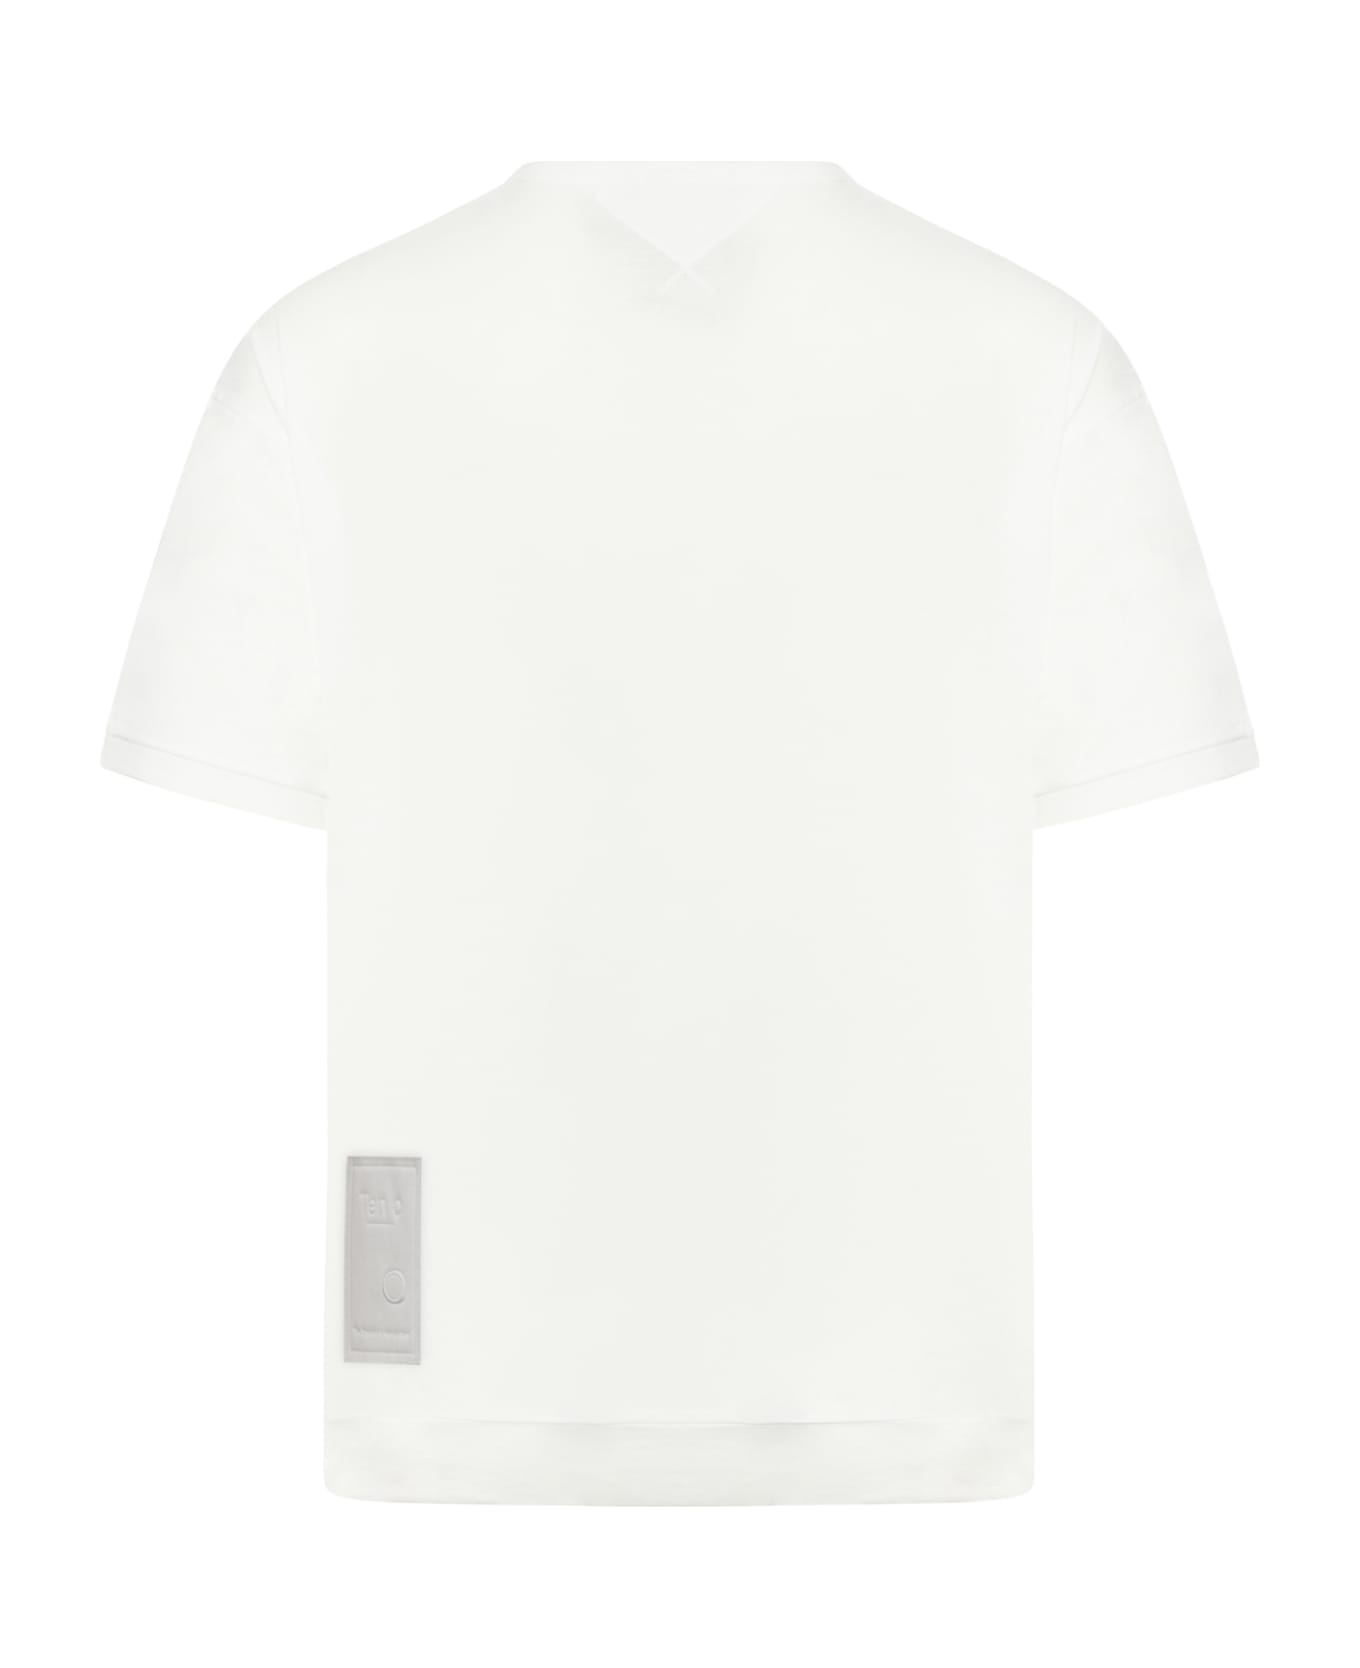 Ten C T-shirt Manica Corta - White